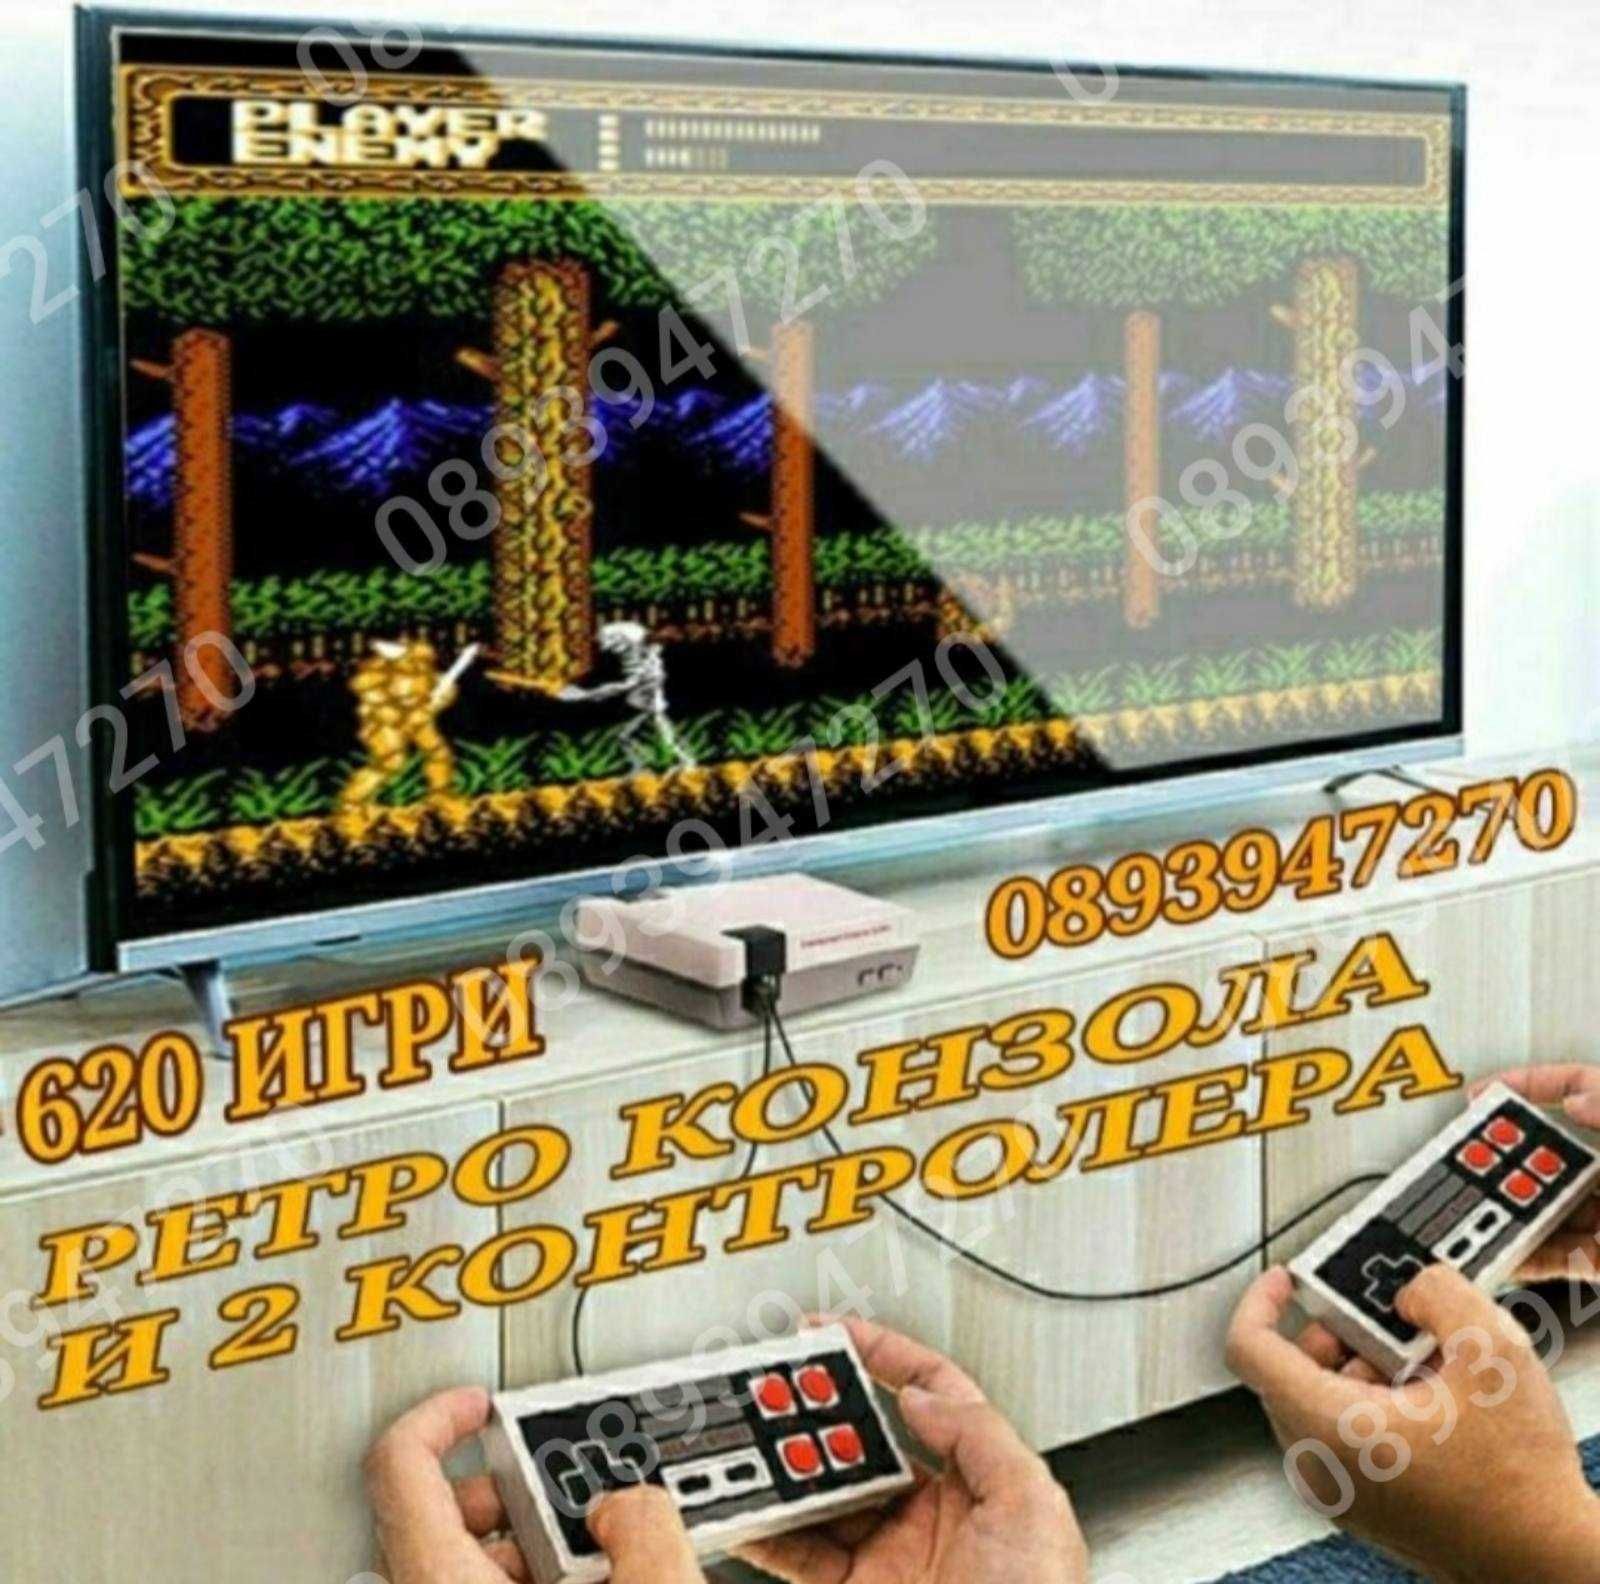 Ретро Гейминг TV Конзола Телевизионна видео игра Nintendo 620 игри